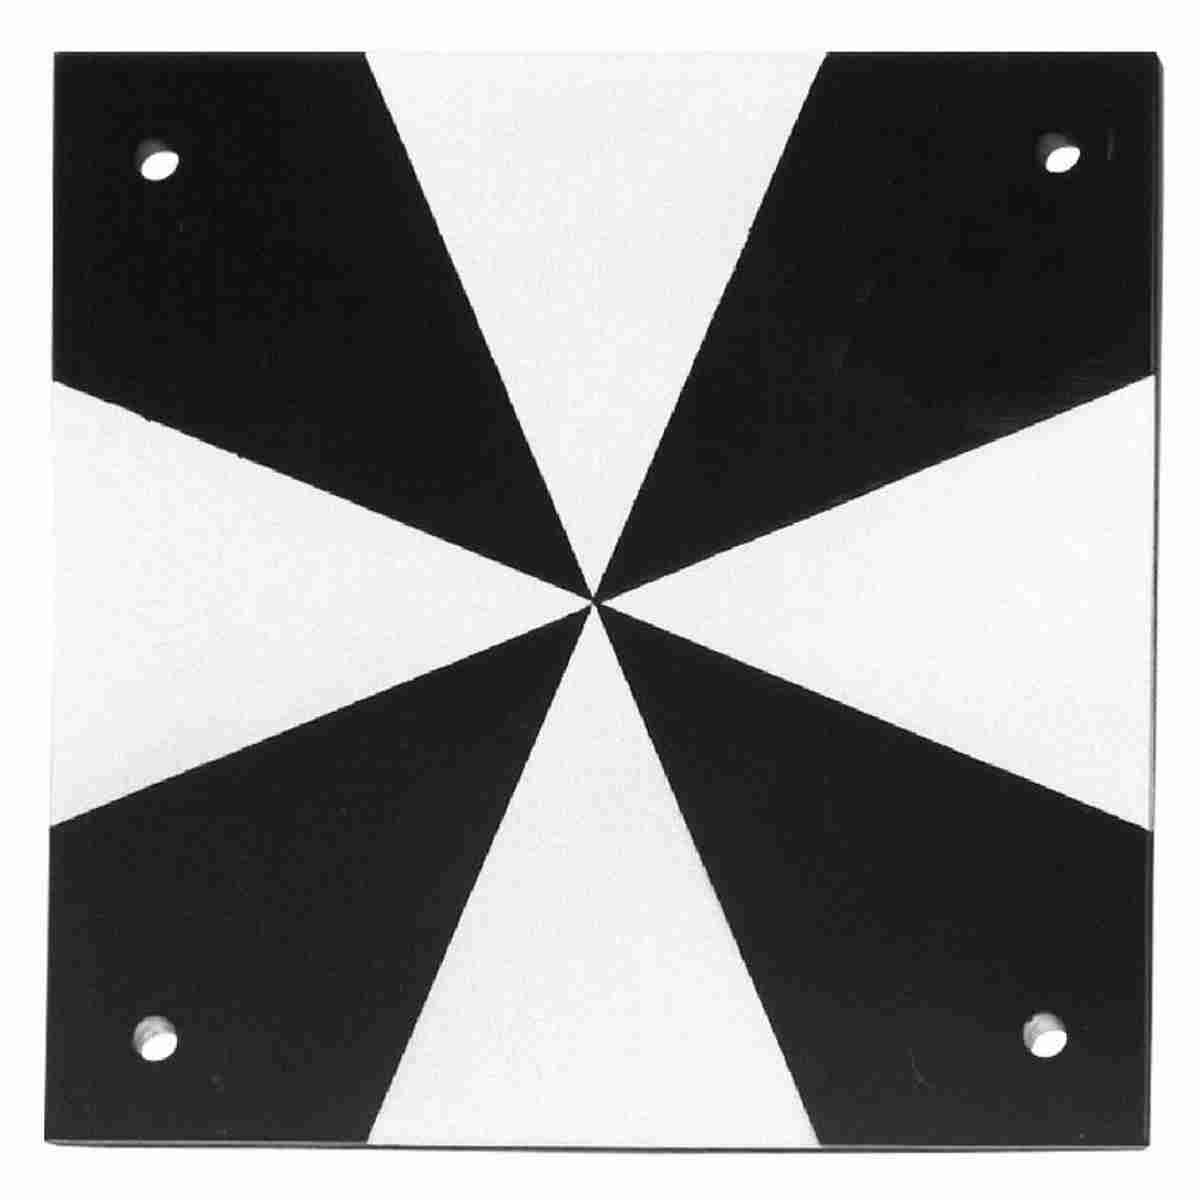 Zielmarke aus Aluminium schwarz-silber eloxiert, 100x100x1,5 mm